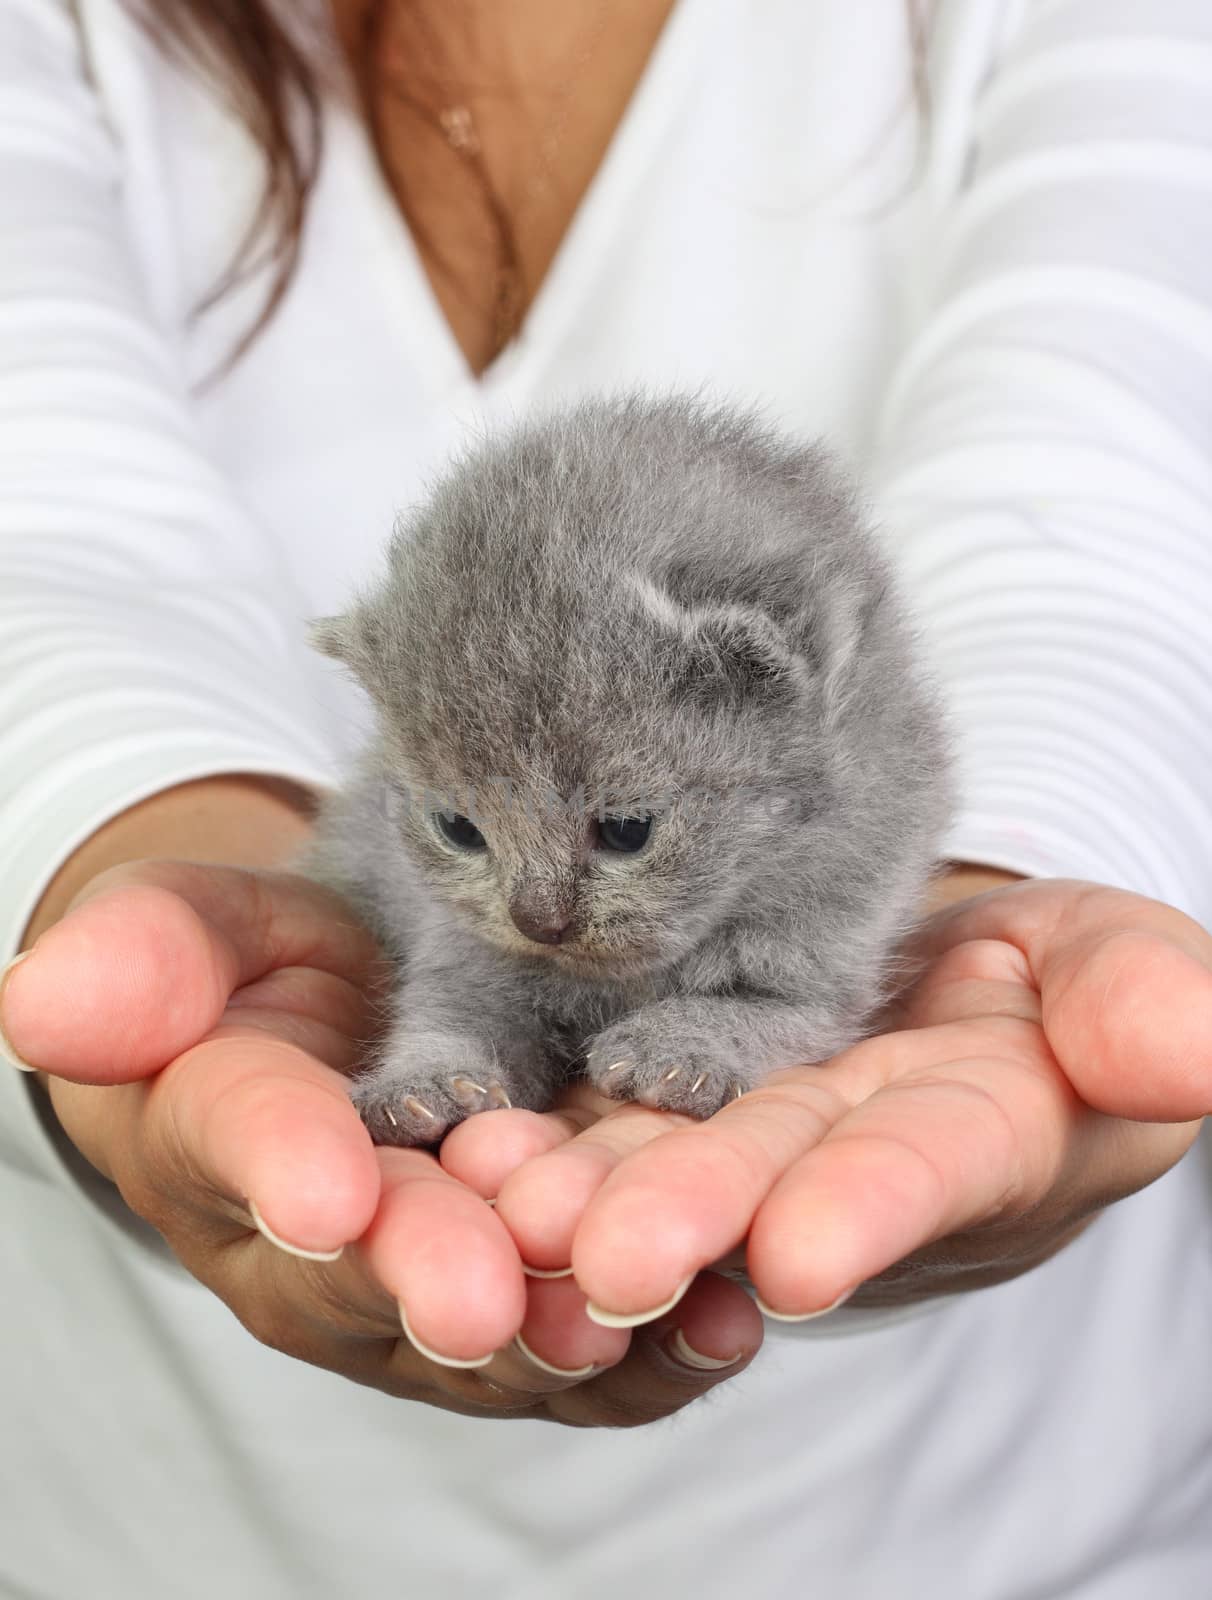 Little british kitten sitting in the hands